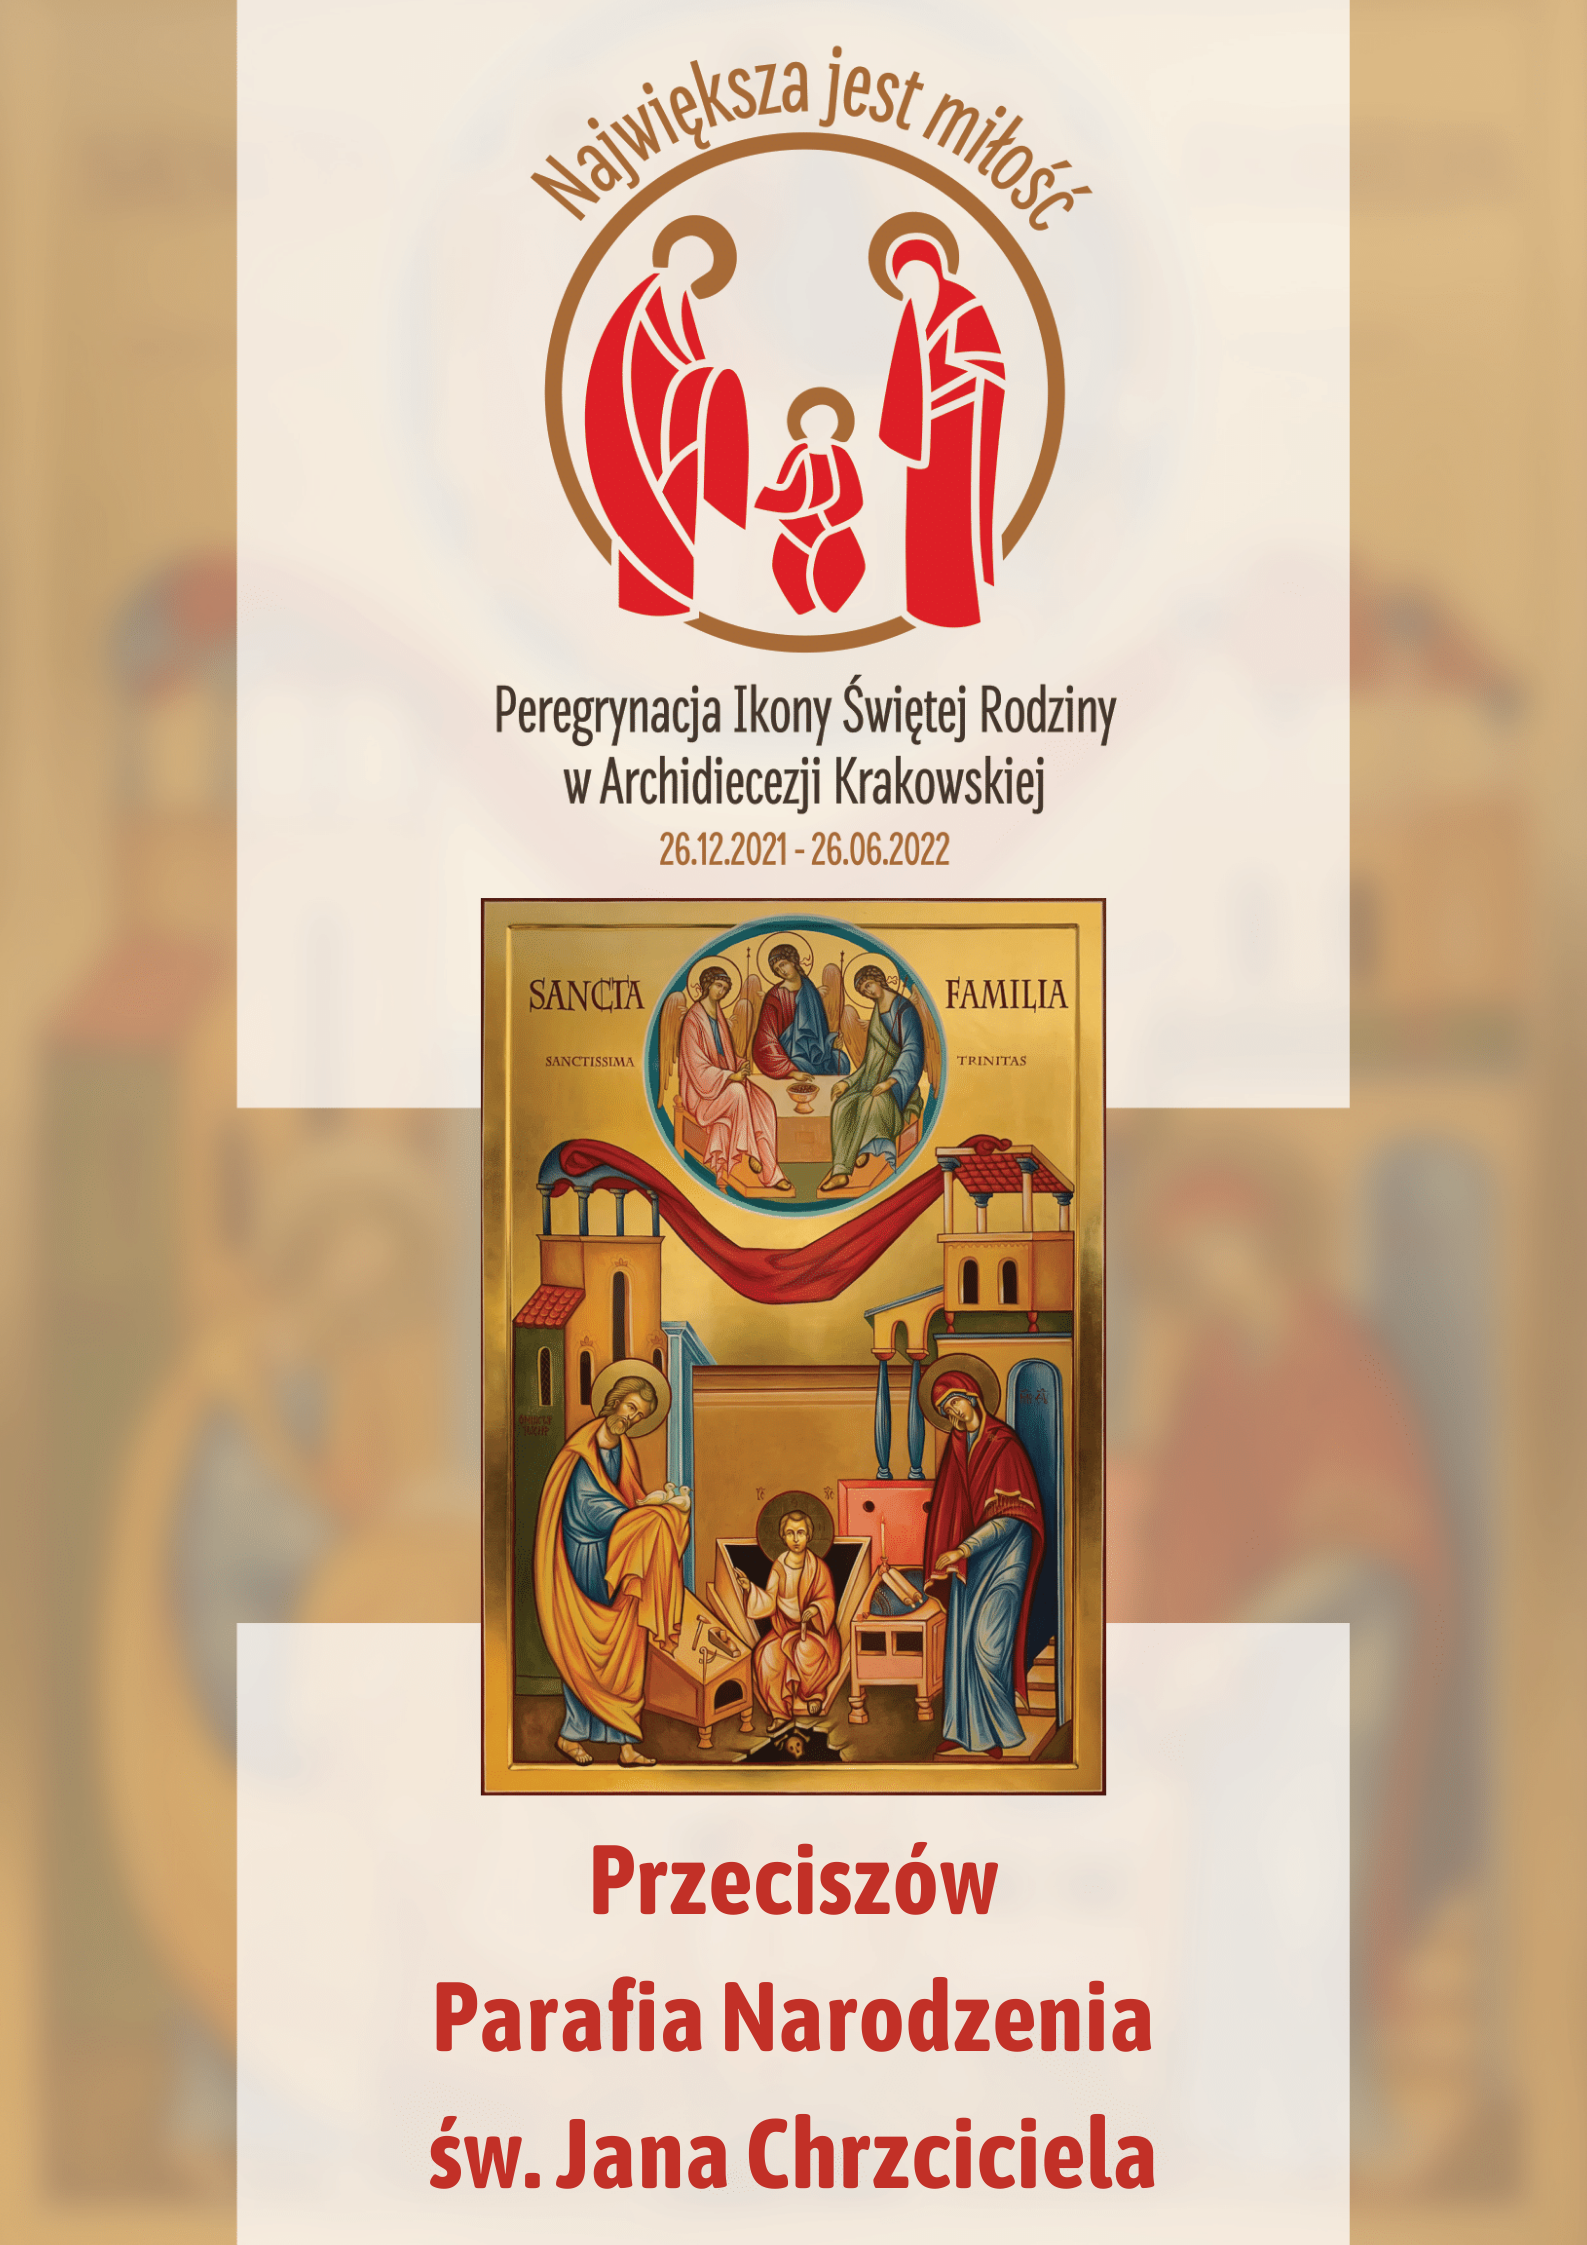 Ikona Świętej Rodziny w parafii Narodzenia św. Jana Chrzciciela w Przeciszowie